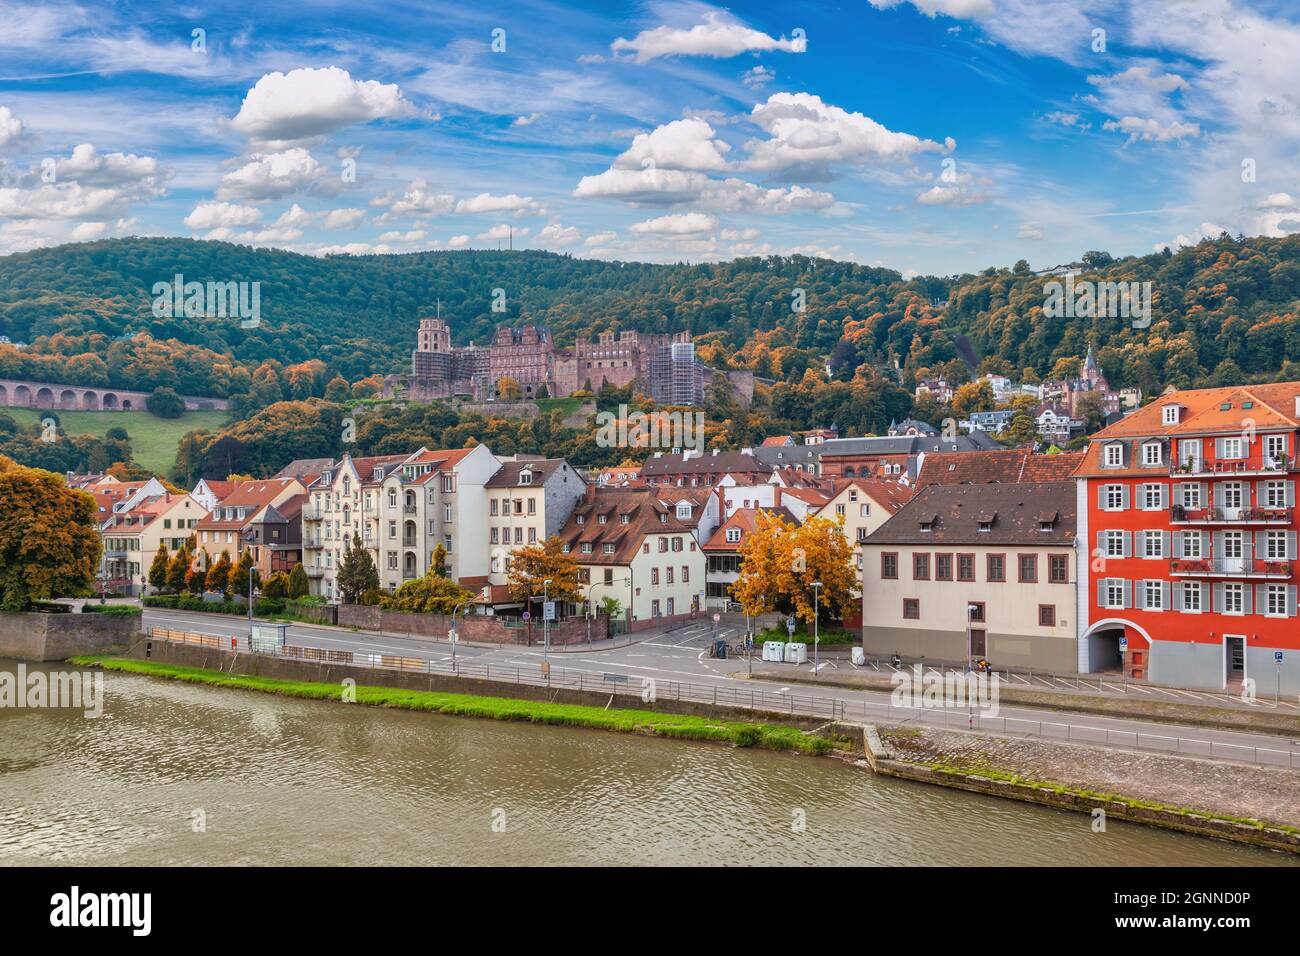 Heidelberg Alemania, el horizonte de la ciudad en el Palacio de Heidelberg y el río Neckar con la temporada de follaje otoñal Foto de stock